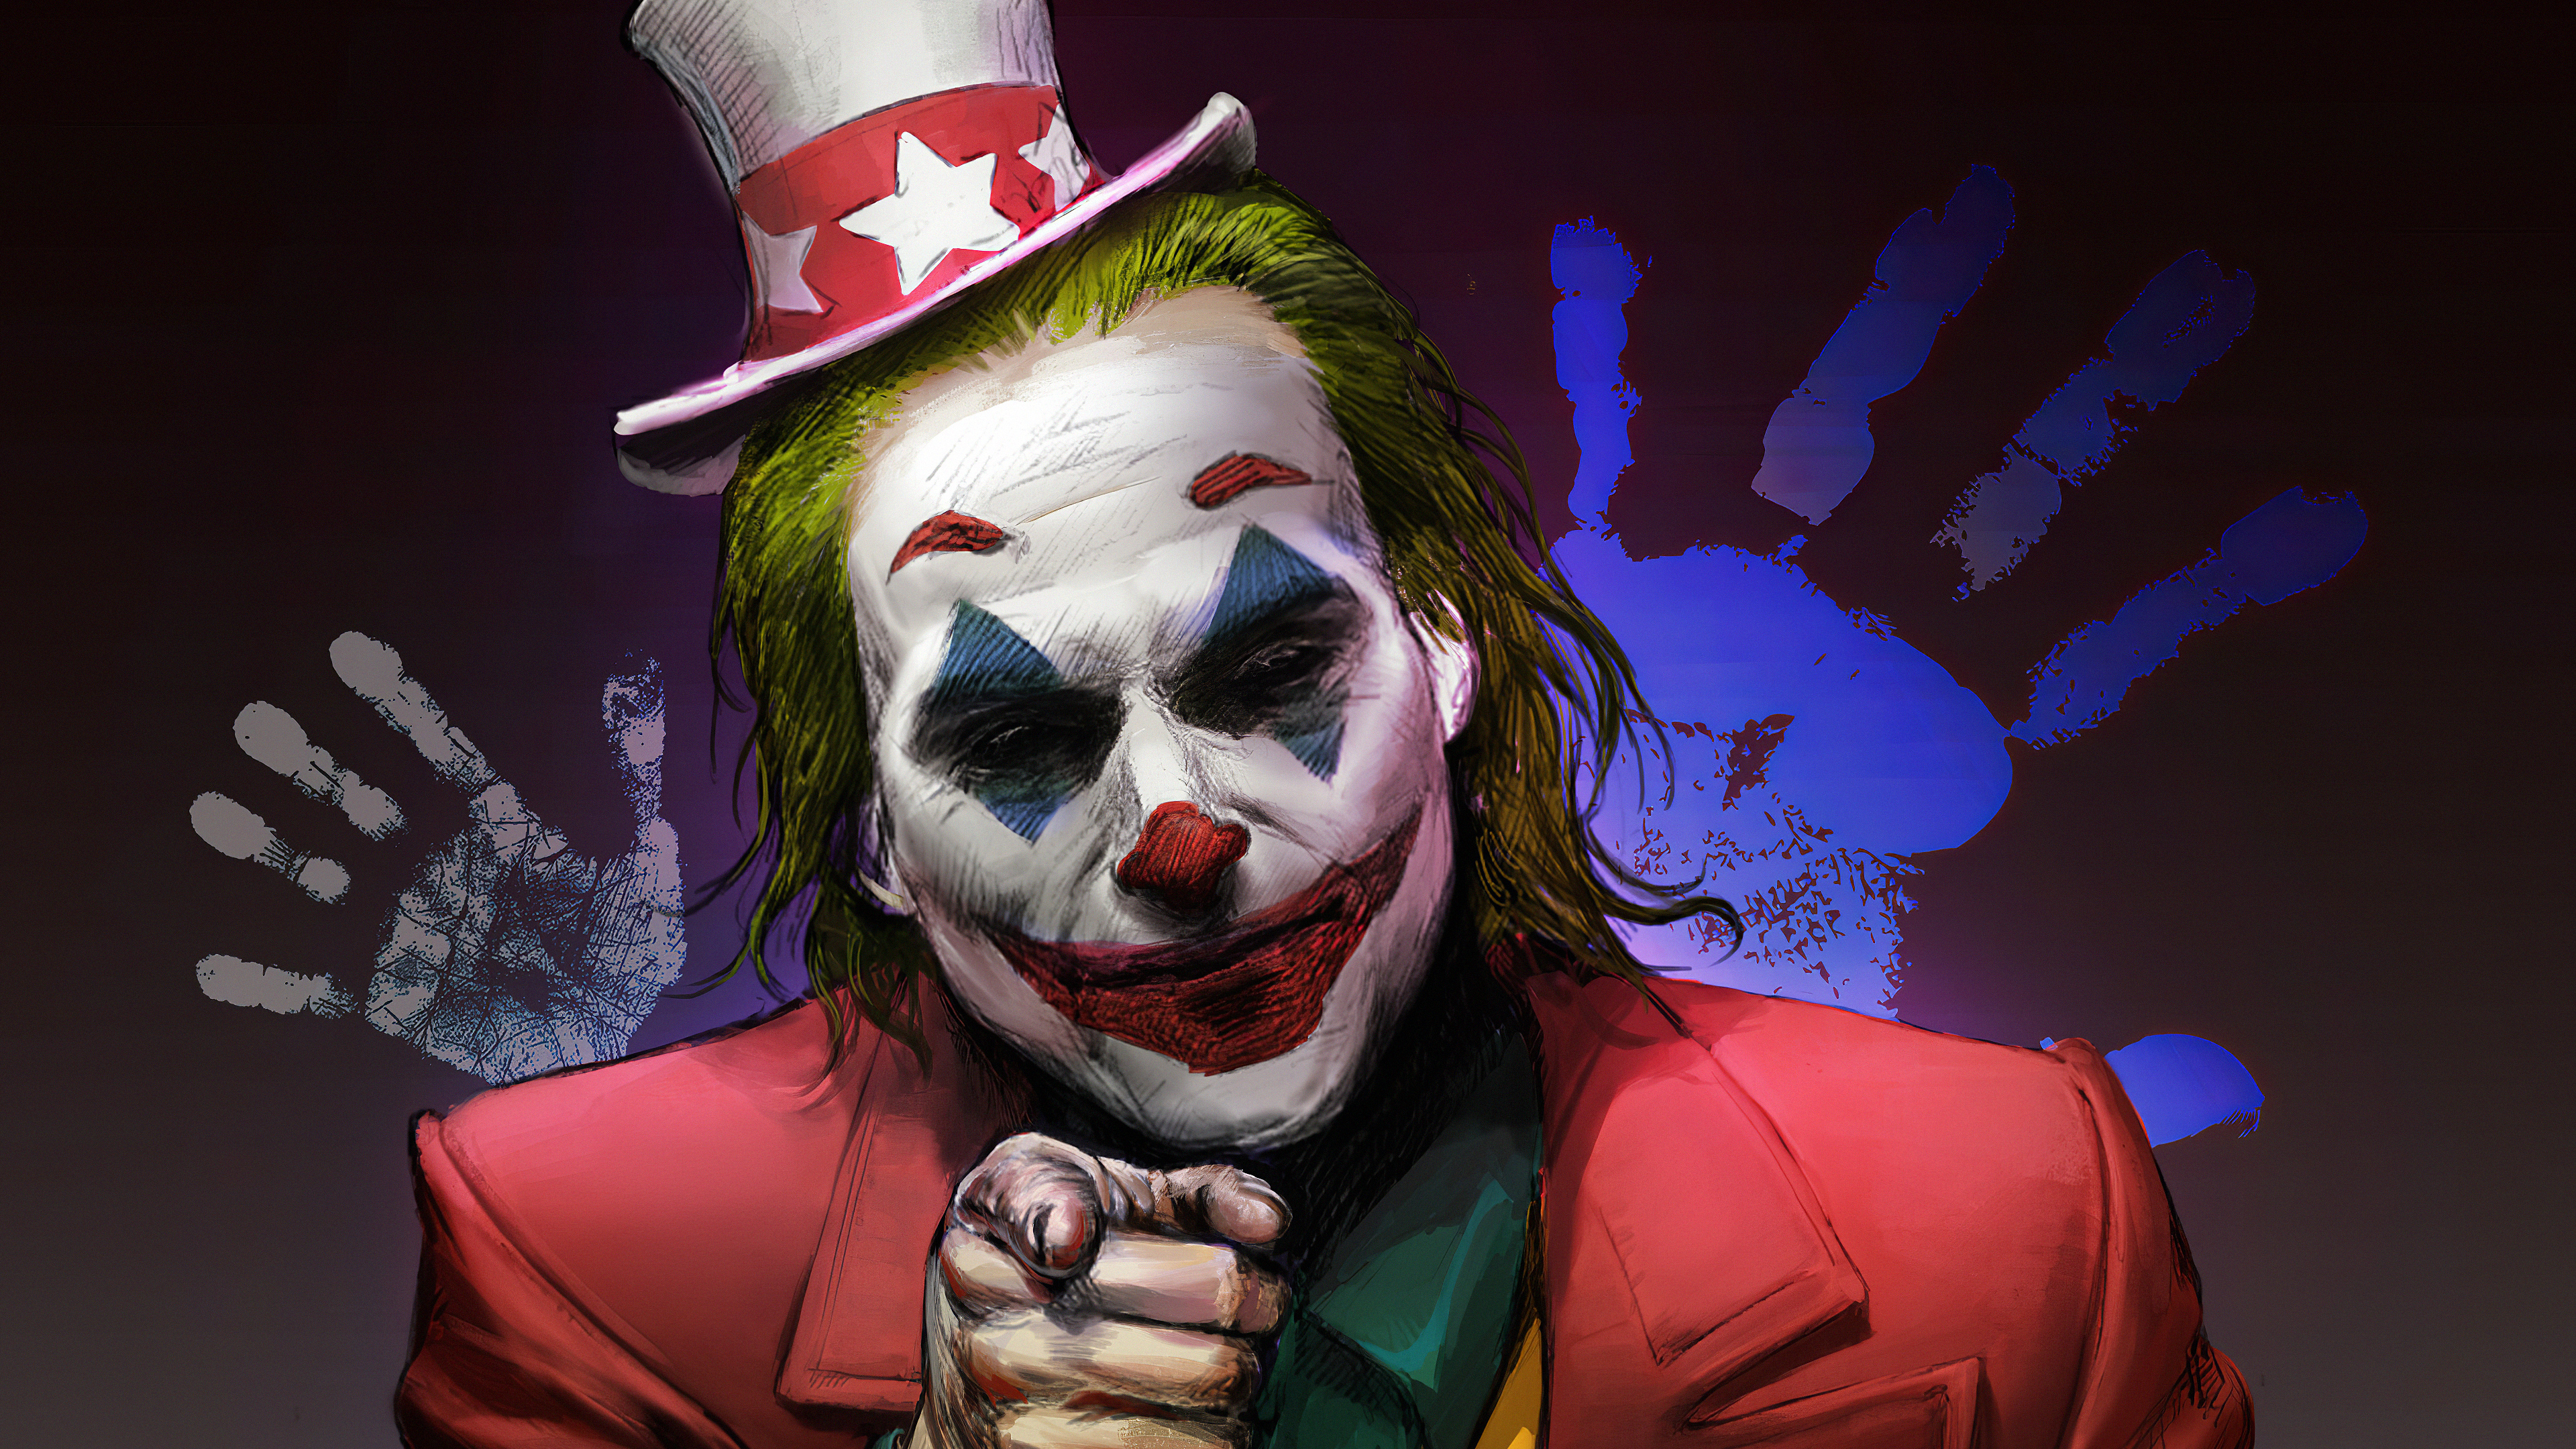 Joker 4k Ultra HD Wallpaper by 23monkey